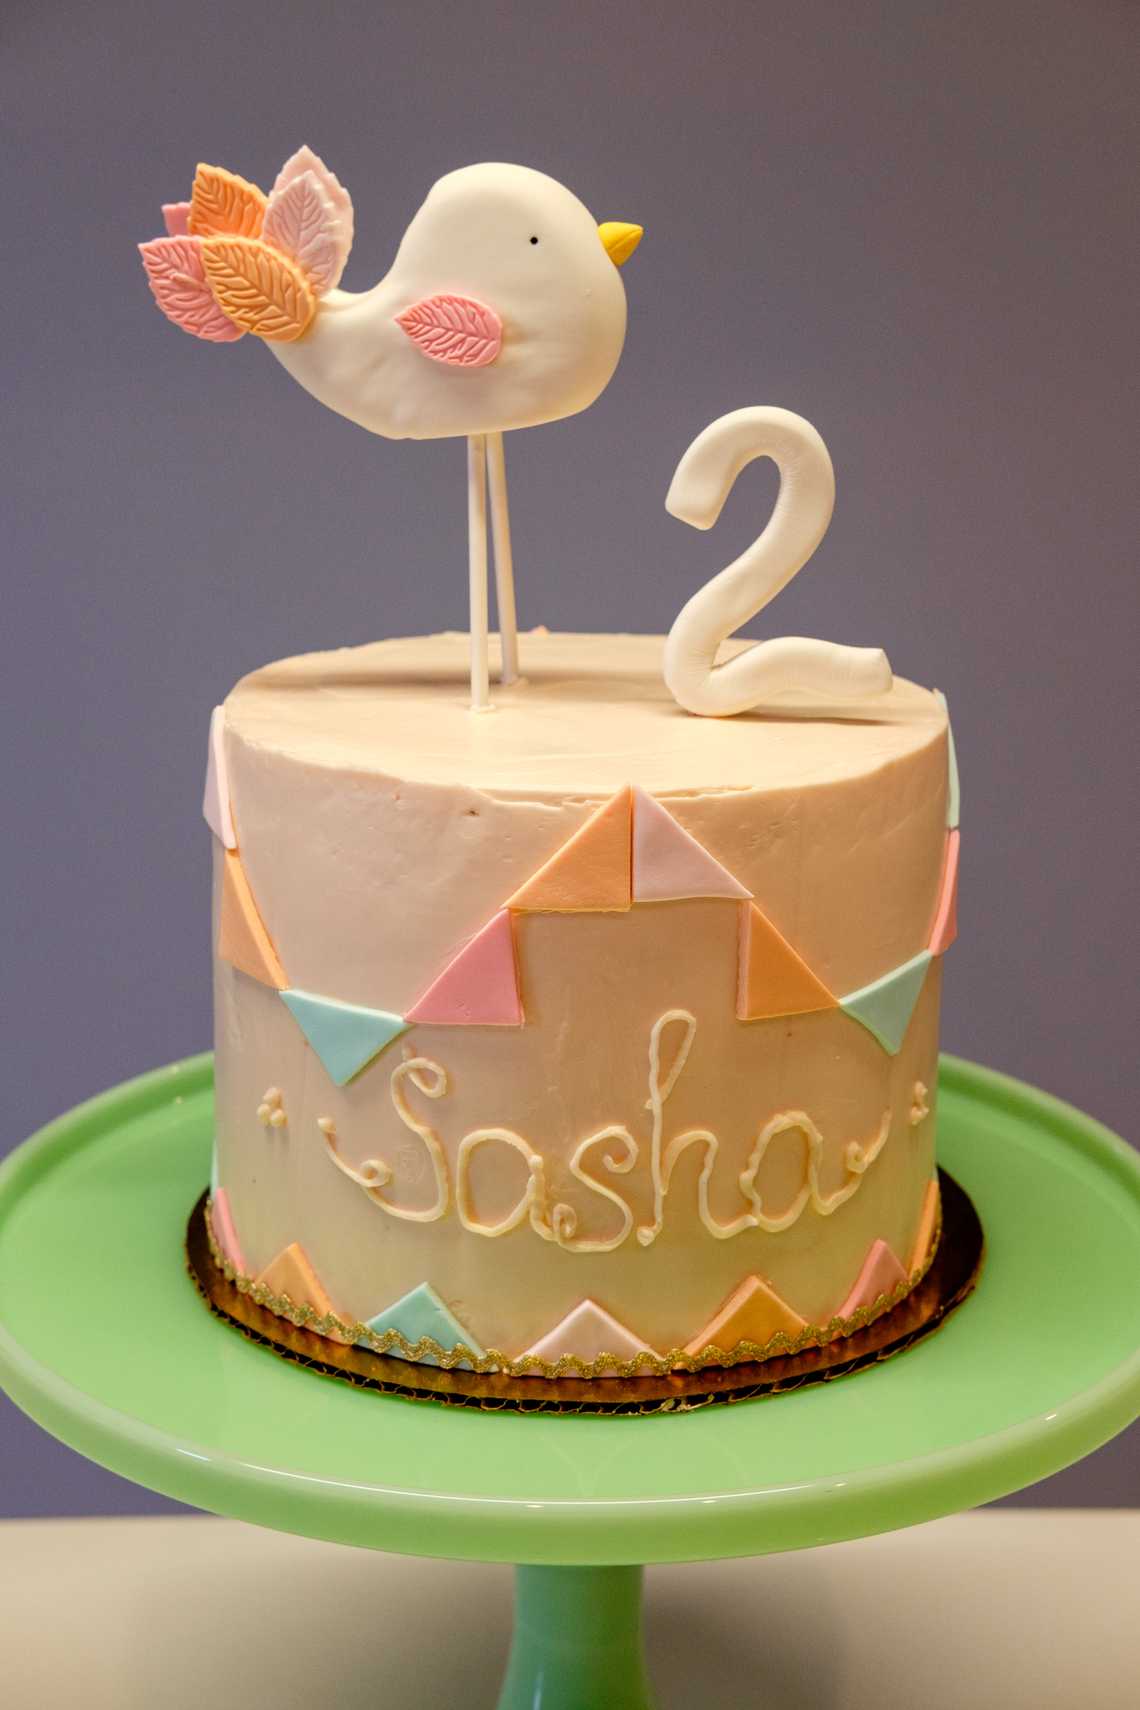 Sasha’s 2nd Birthday Cake — December 16, 2016